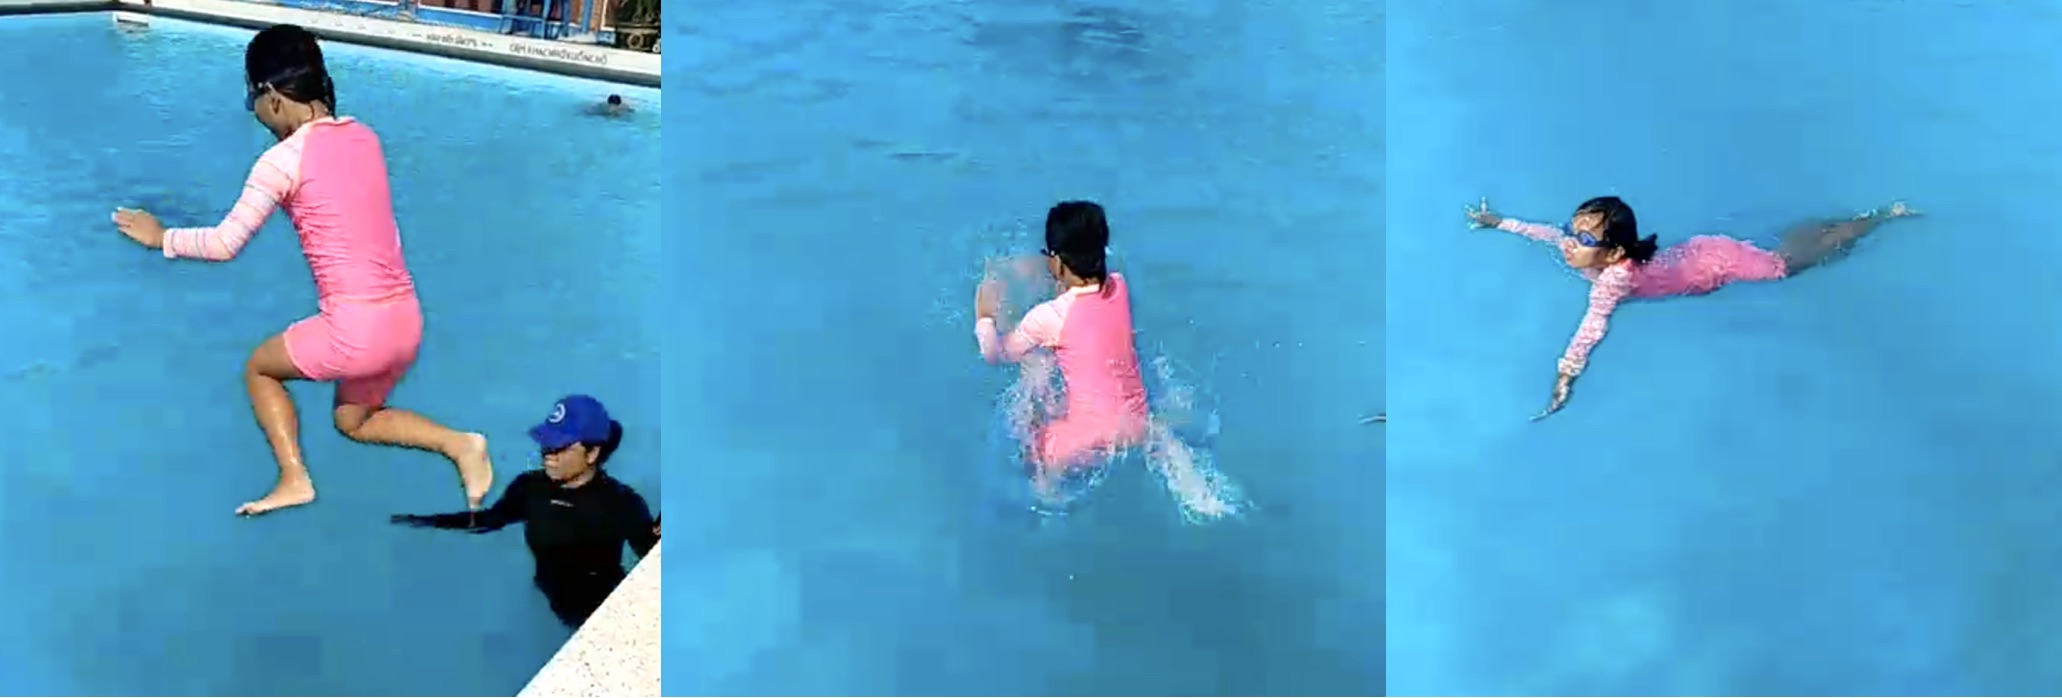 Huấn luyện viên dạy kèm riêng trẻ em học bơi, biết bơi ngay tuần đầu tiên